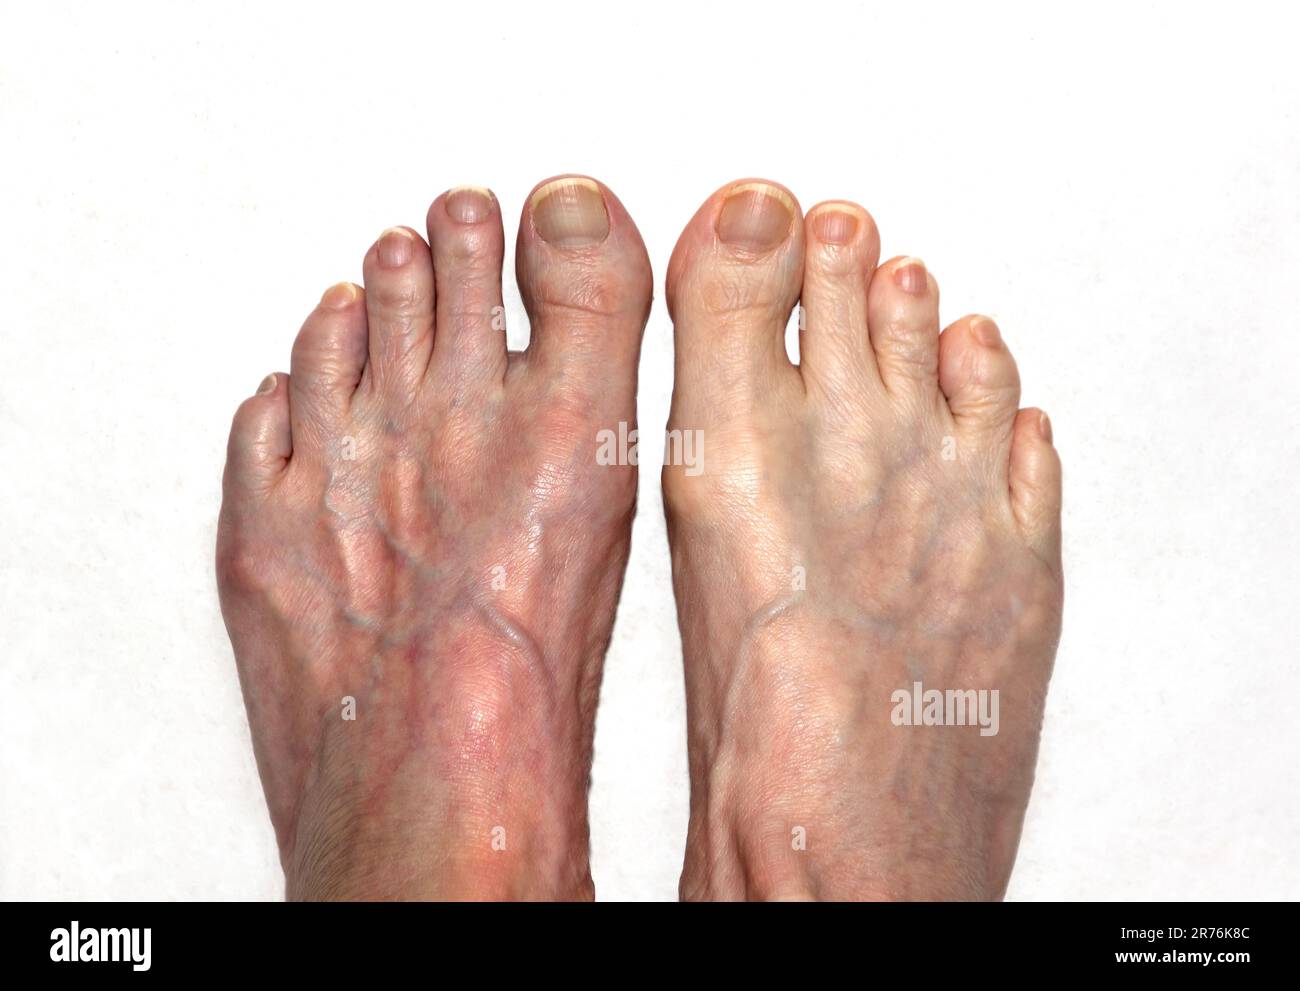 Primo piano dei piedi di una persona, il piede sinistro rosso mentre il piede destro è normale. Foto Stock